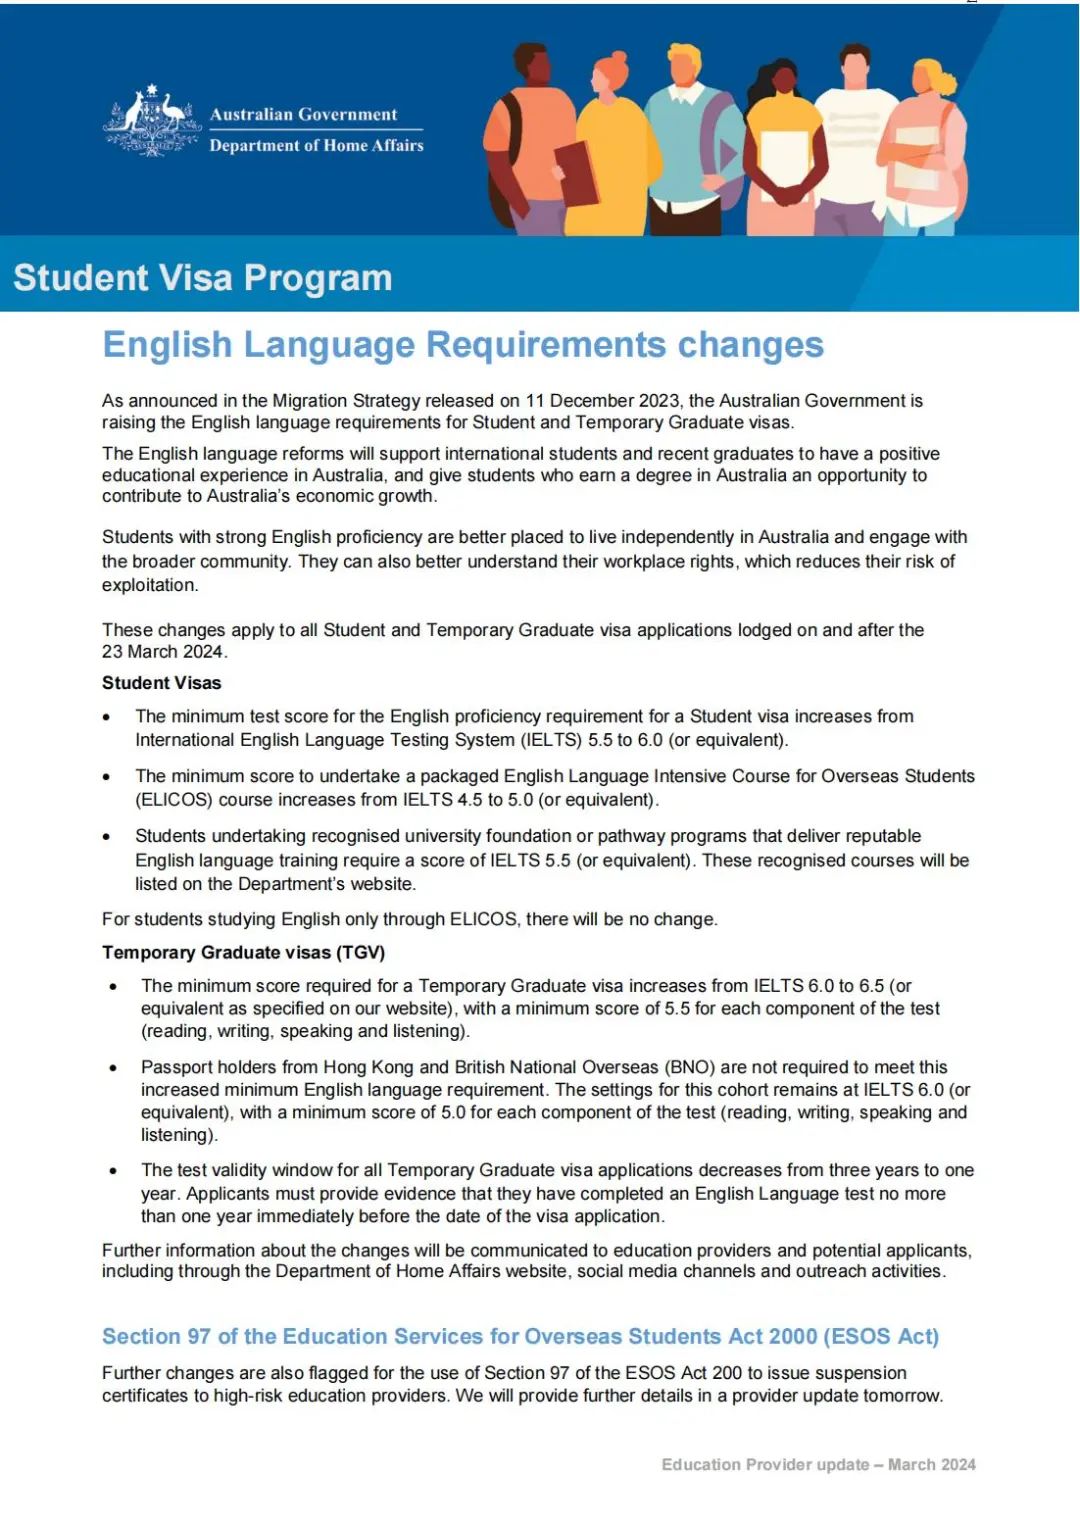 升学快讯丨澳移民局提升学生签证所需英文成绩& 雅思开放单科重考